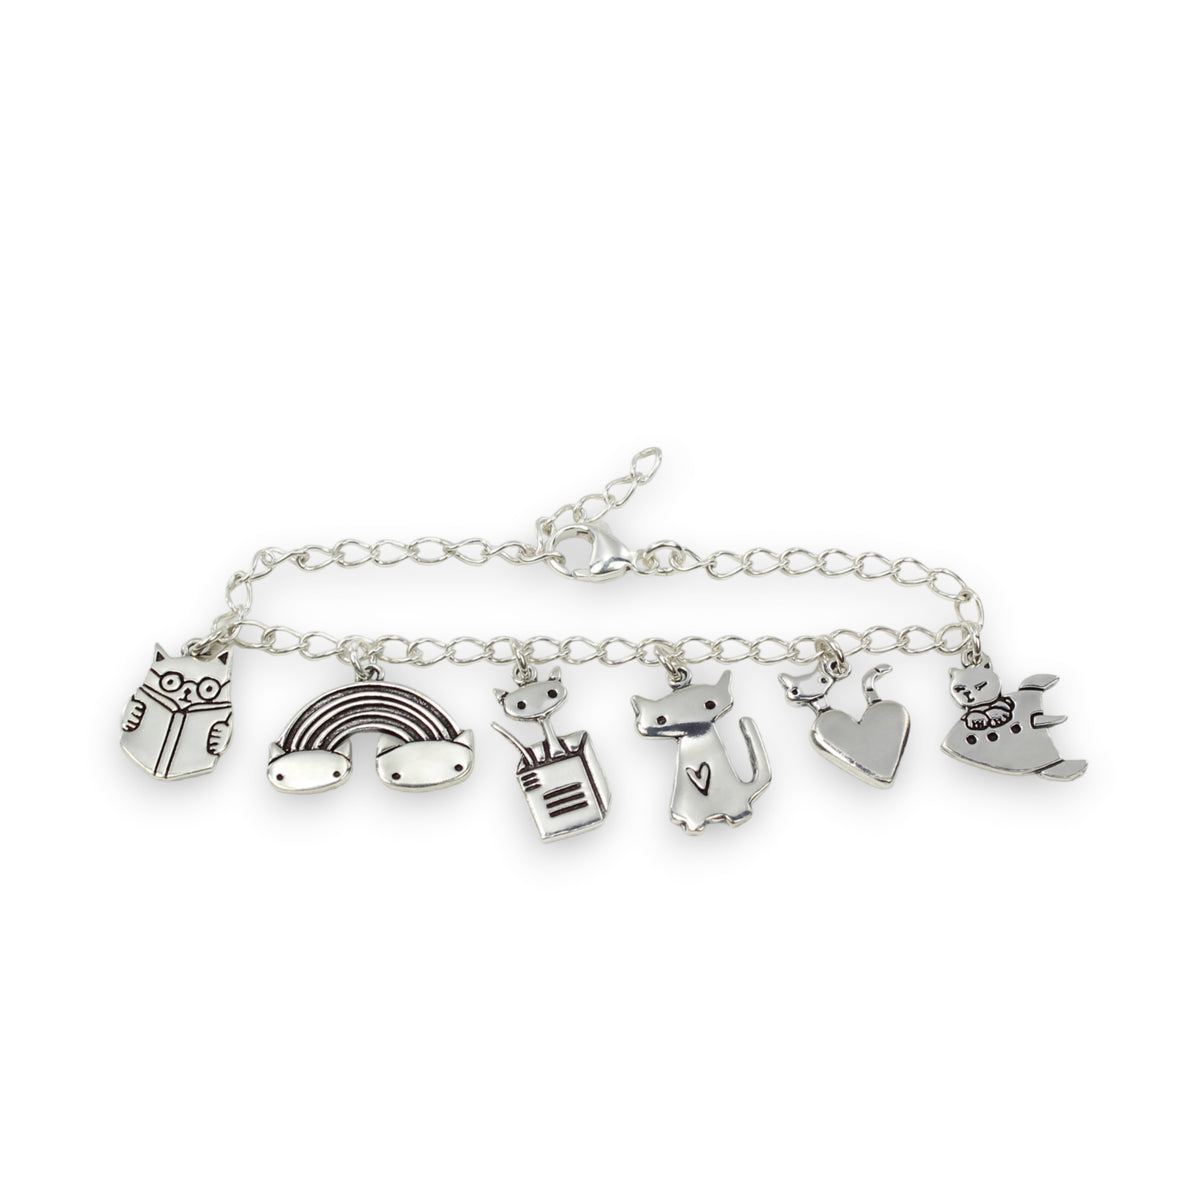 Six Cats Charm Bracelet - Sterling Silver Bracelet with 6 Unique